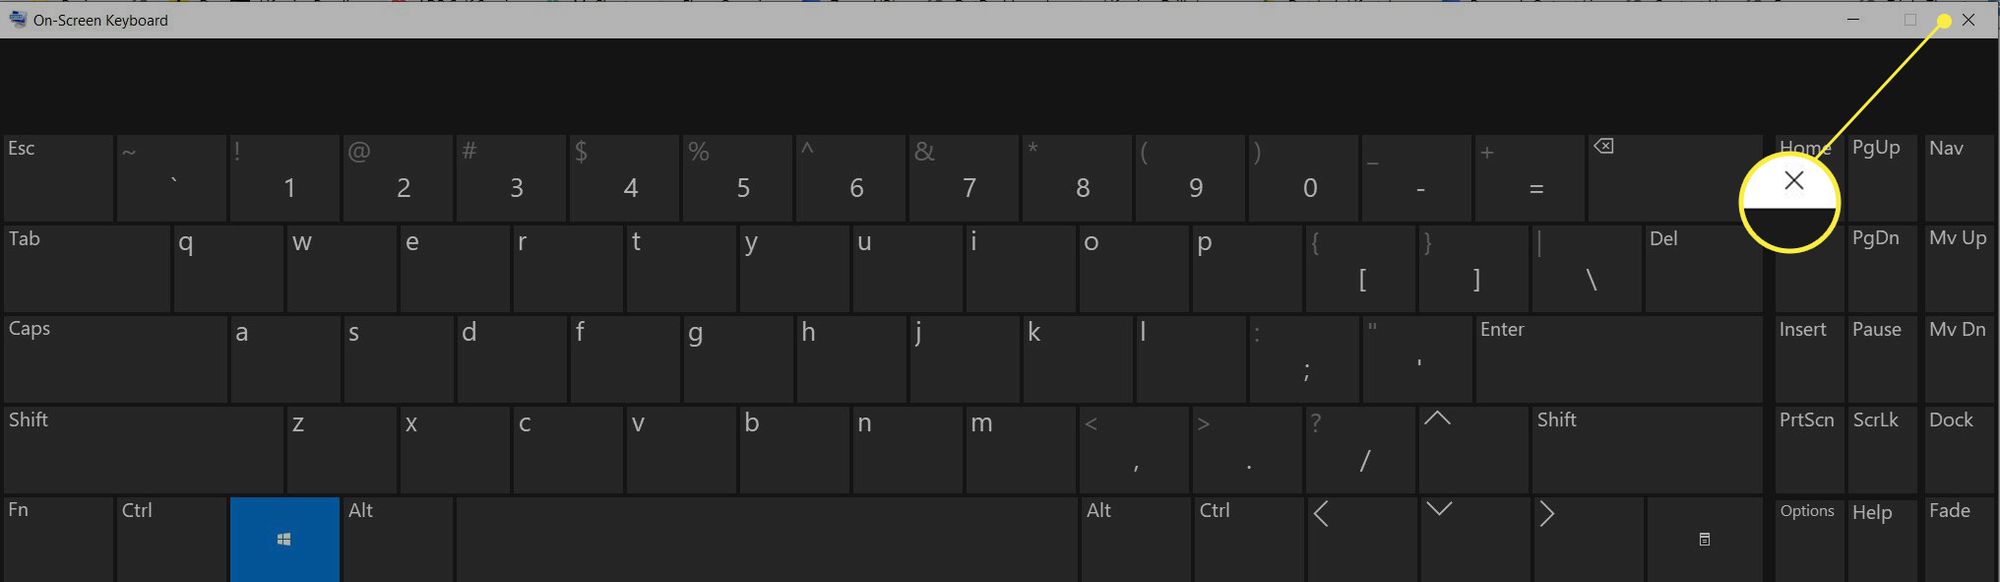 Екранна клавіатура з виділеним знаком закриття (X).